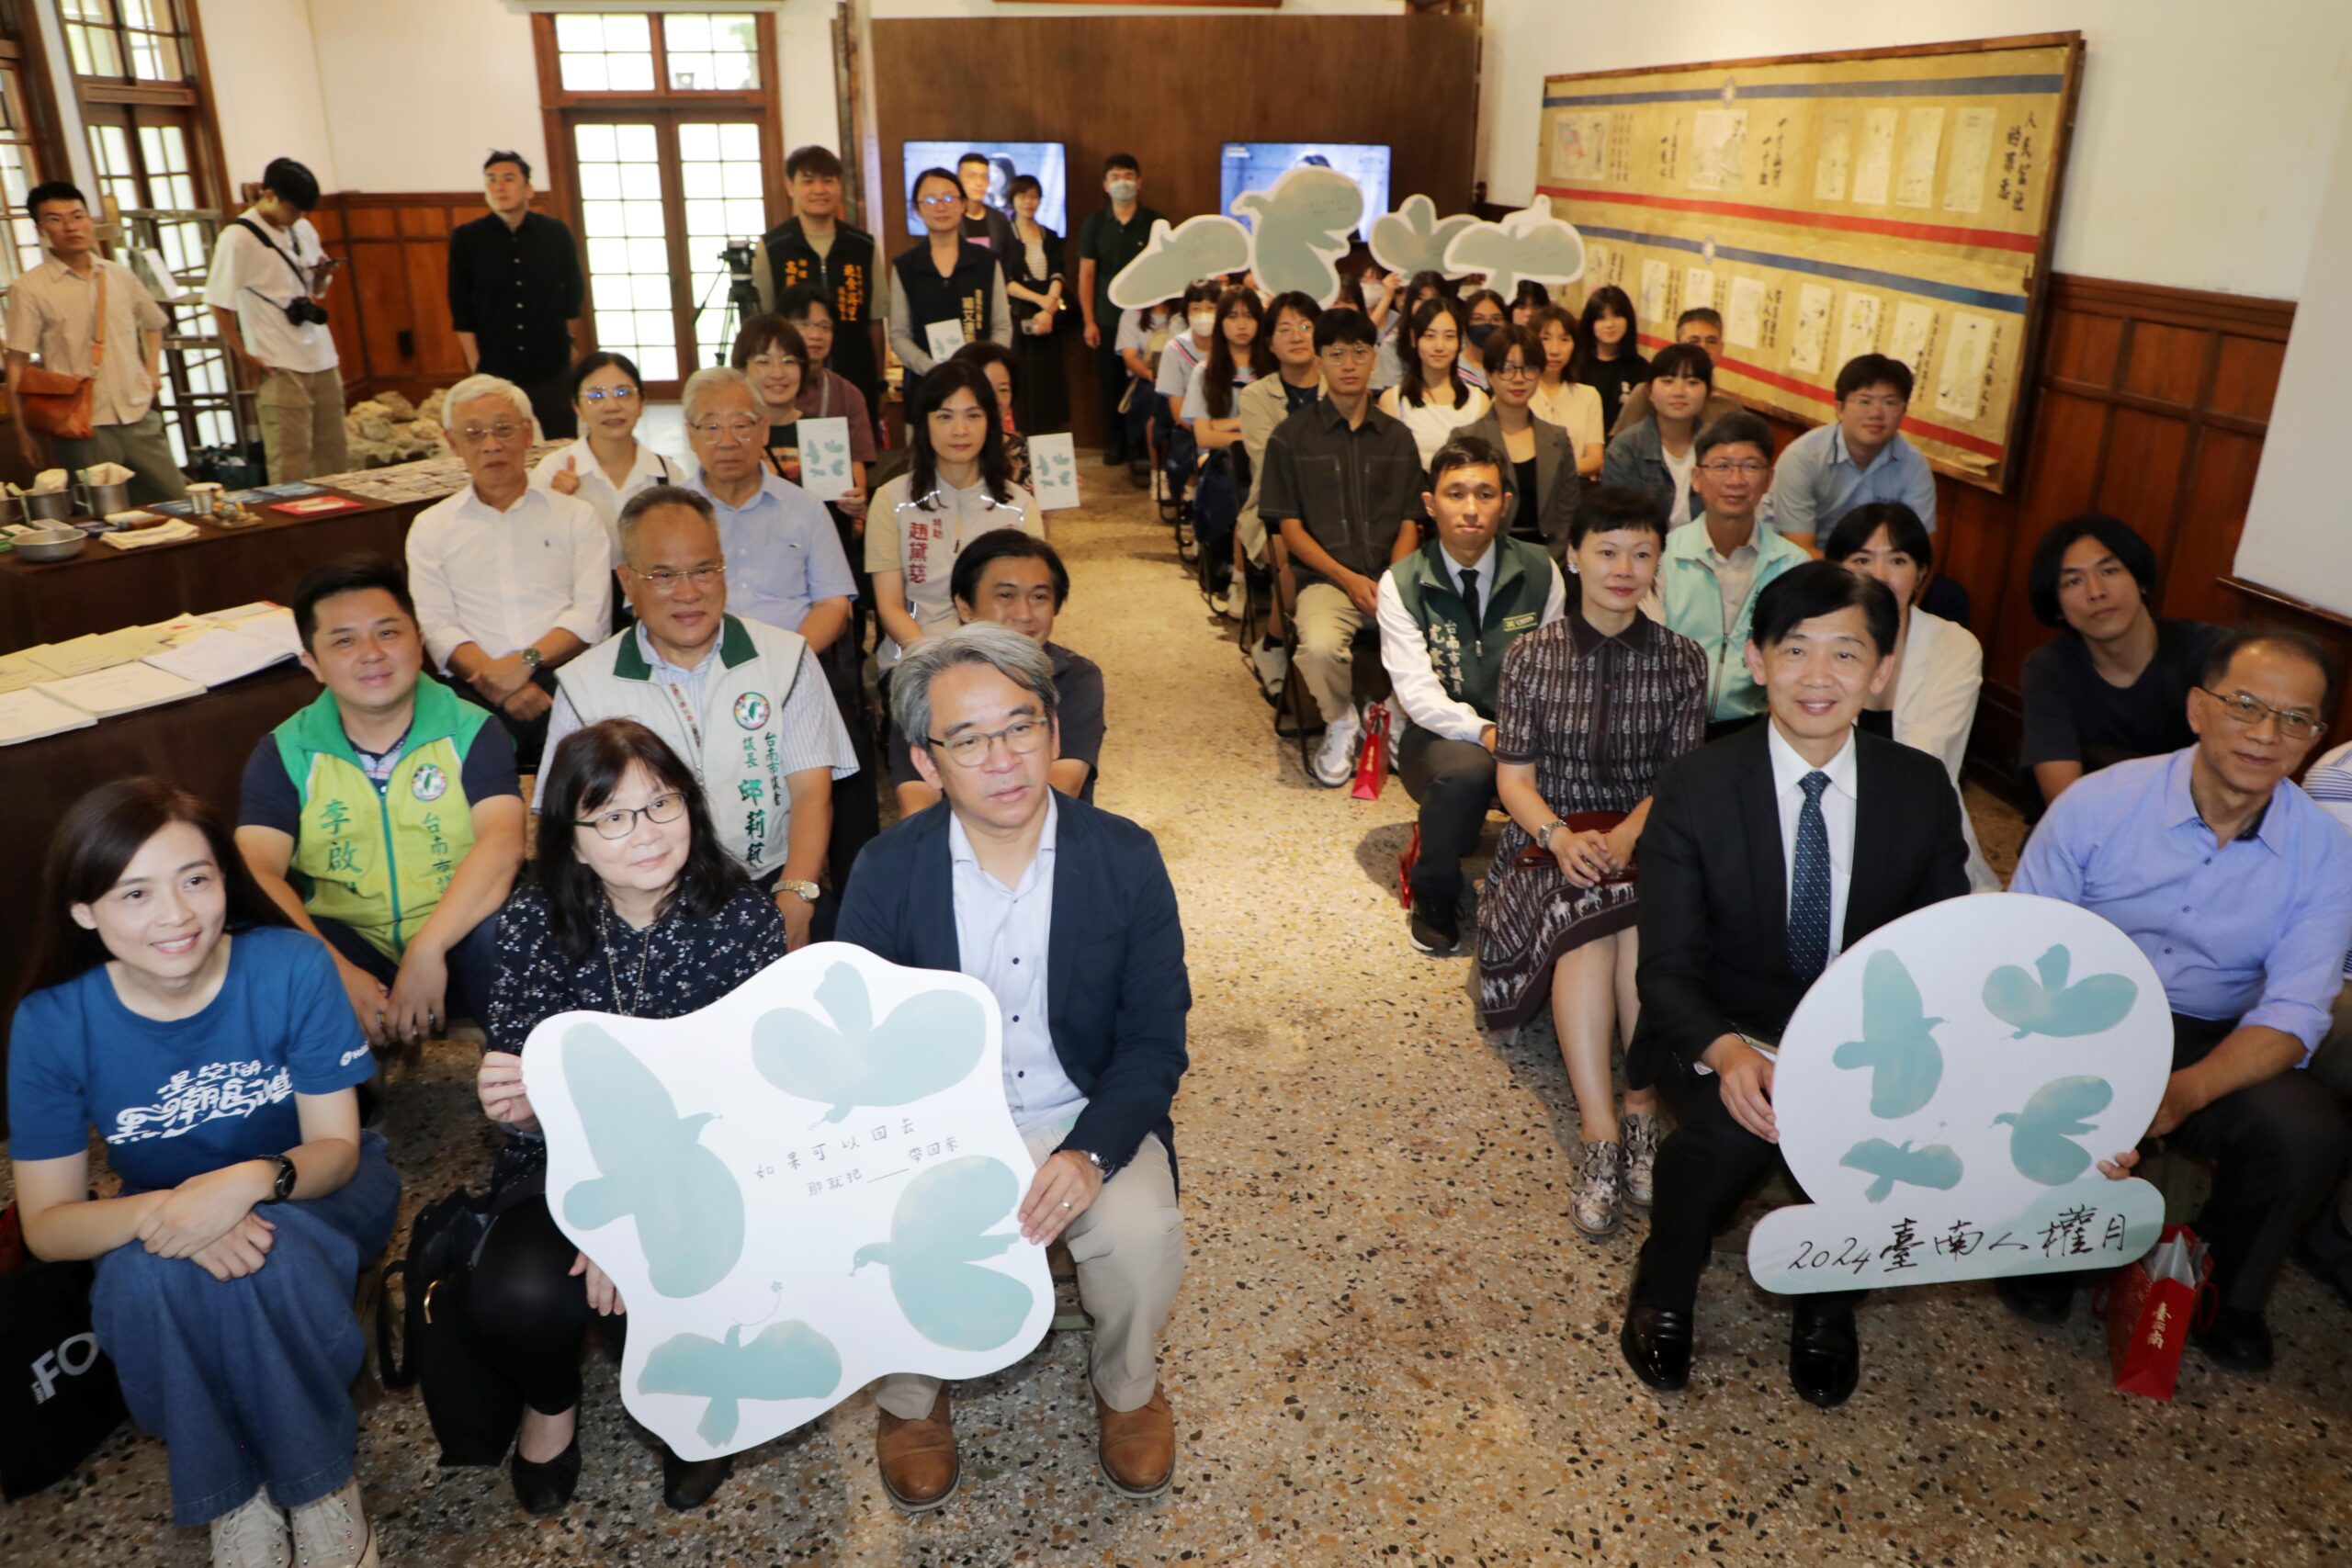 首屆臺南人權月登場  黃偉哲邀參與四大展區28組創作、22場藝文活動